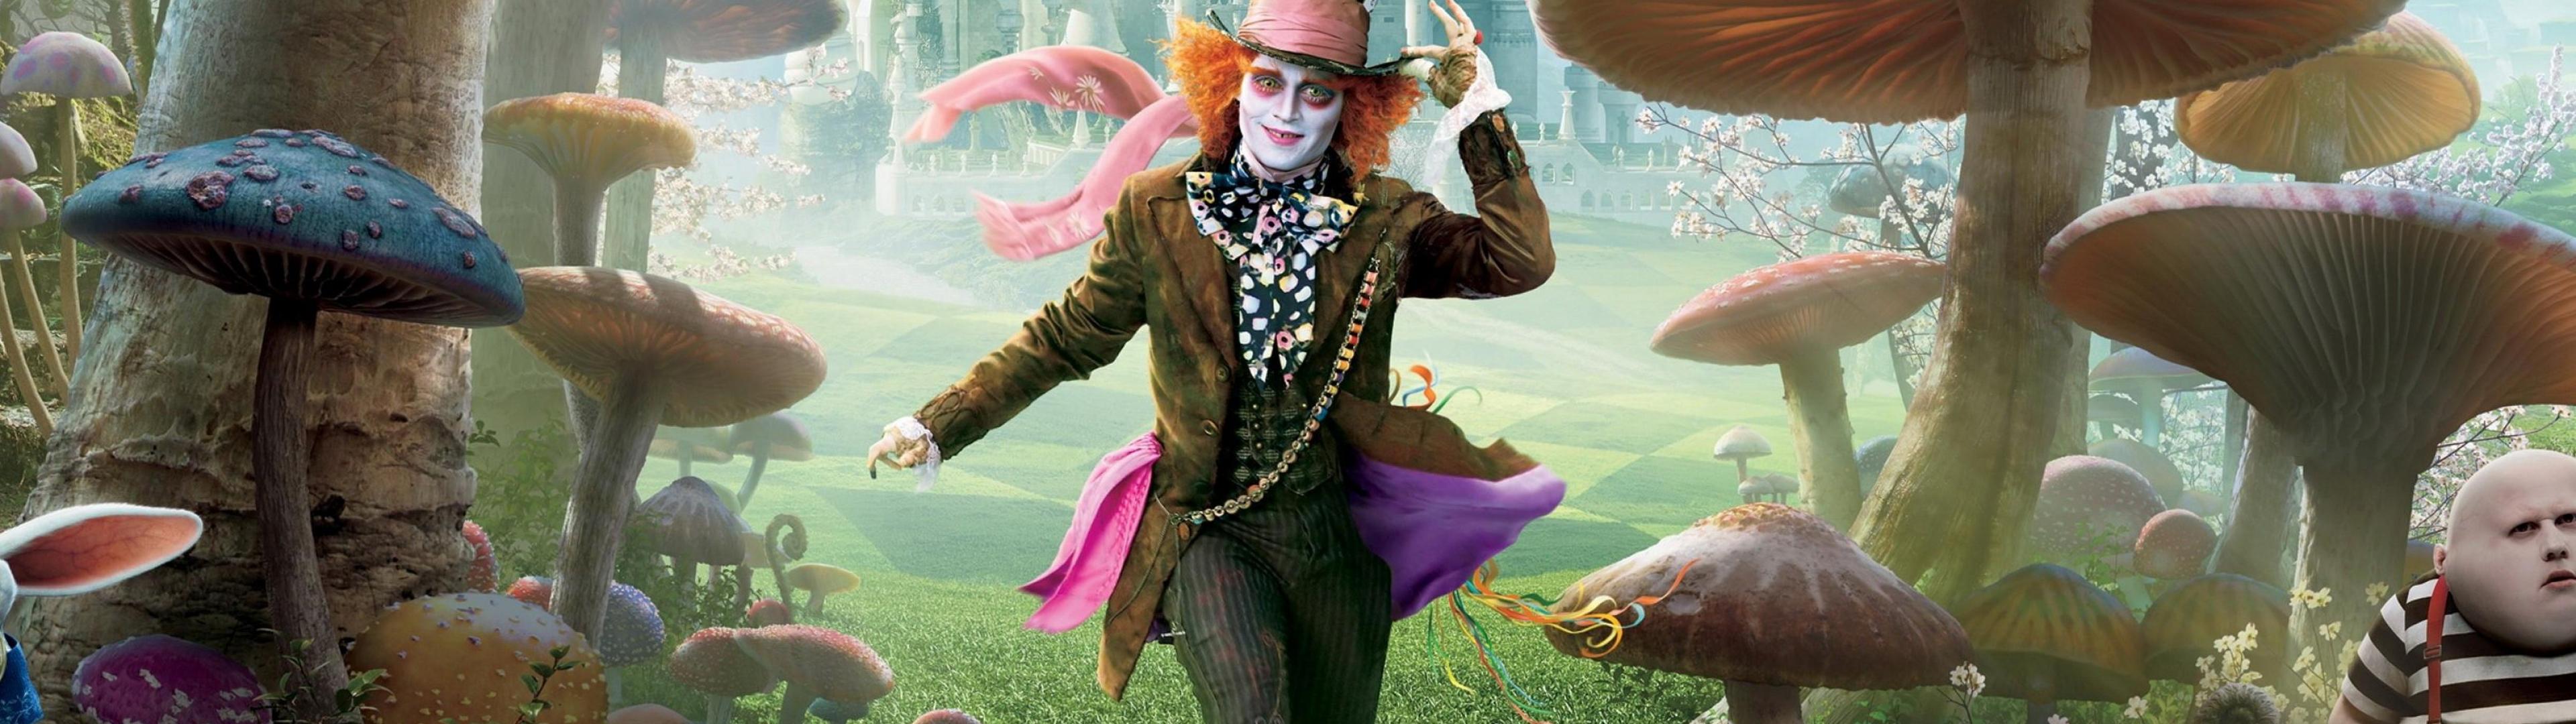 Free Download Fantasy Alice In Wonderland Mad Hatter Johnny Depp.